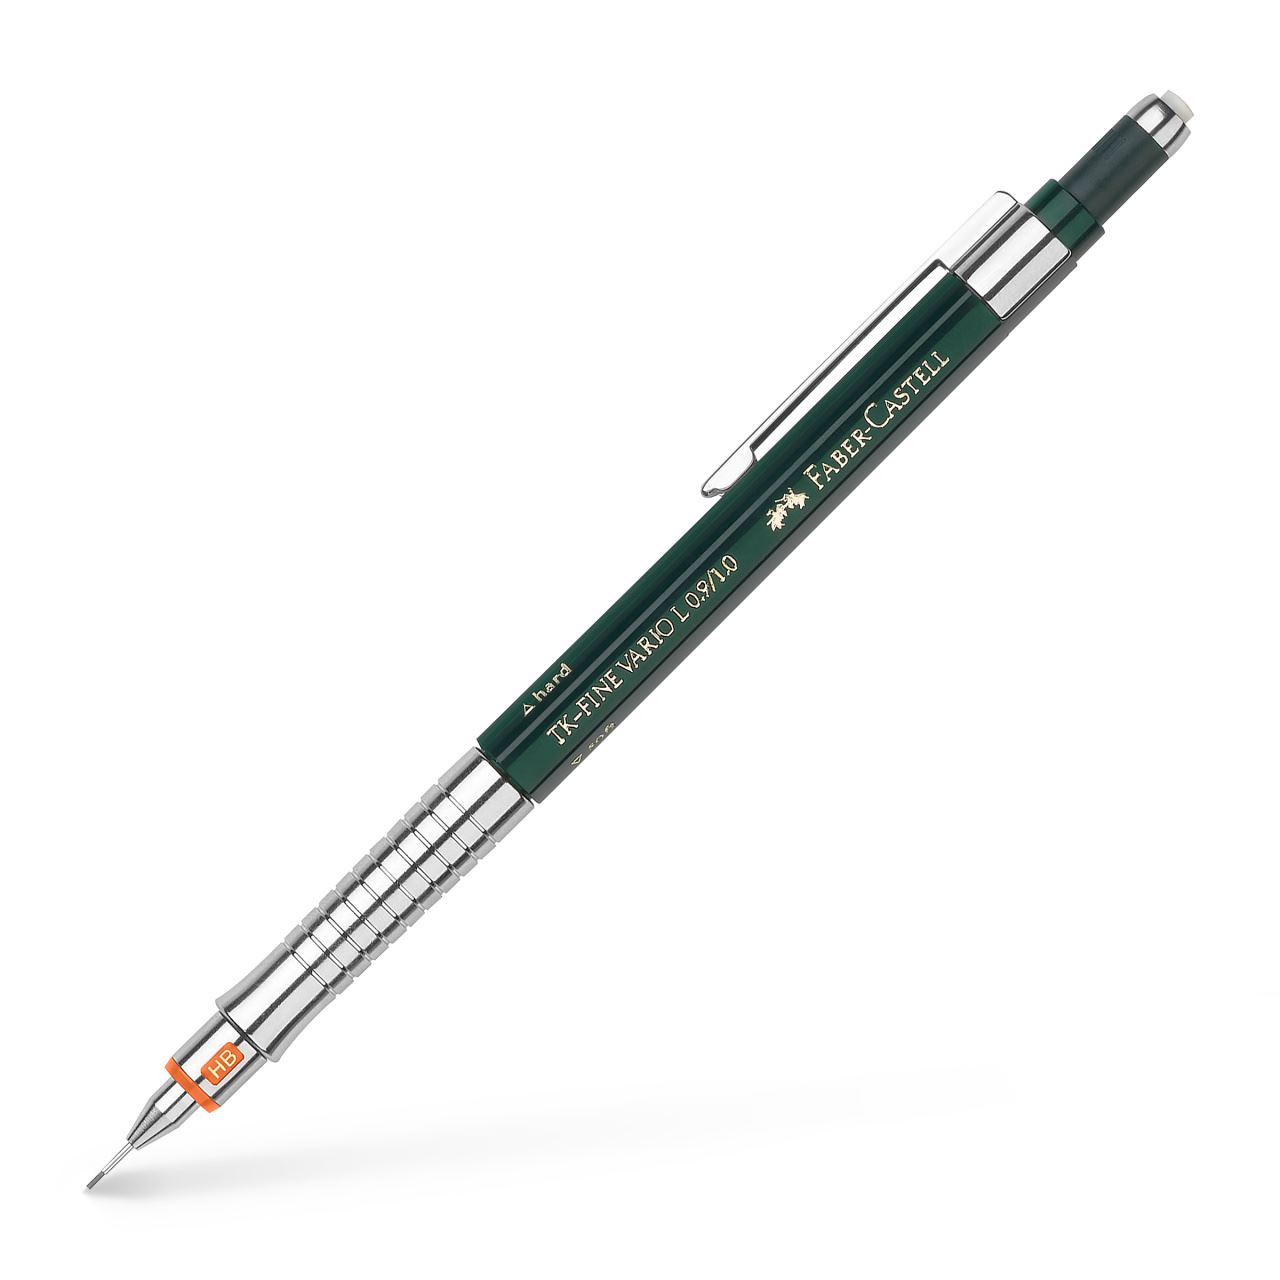 Faber-Castell - Μηχανικό μολύβι TK-Fine Vario 0,9mm